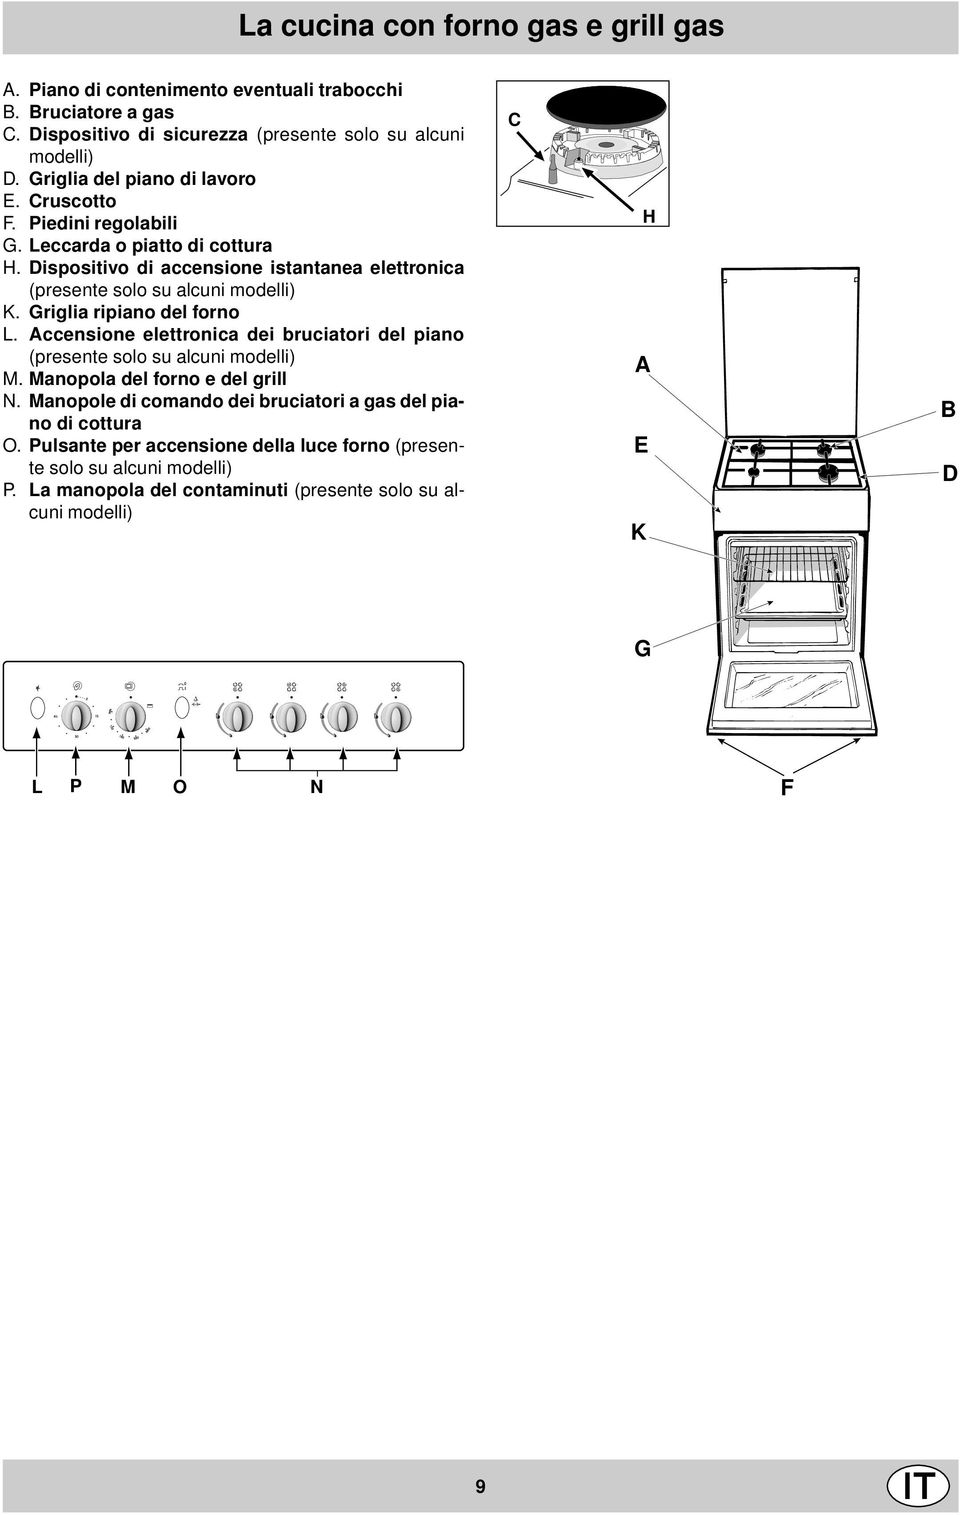 Griglia ripiano del forno L. Accensione elettronica dei bruciatori del piano (presente solo su alcuni modelli) M. Manopola del forno e del grill N.